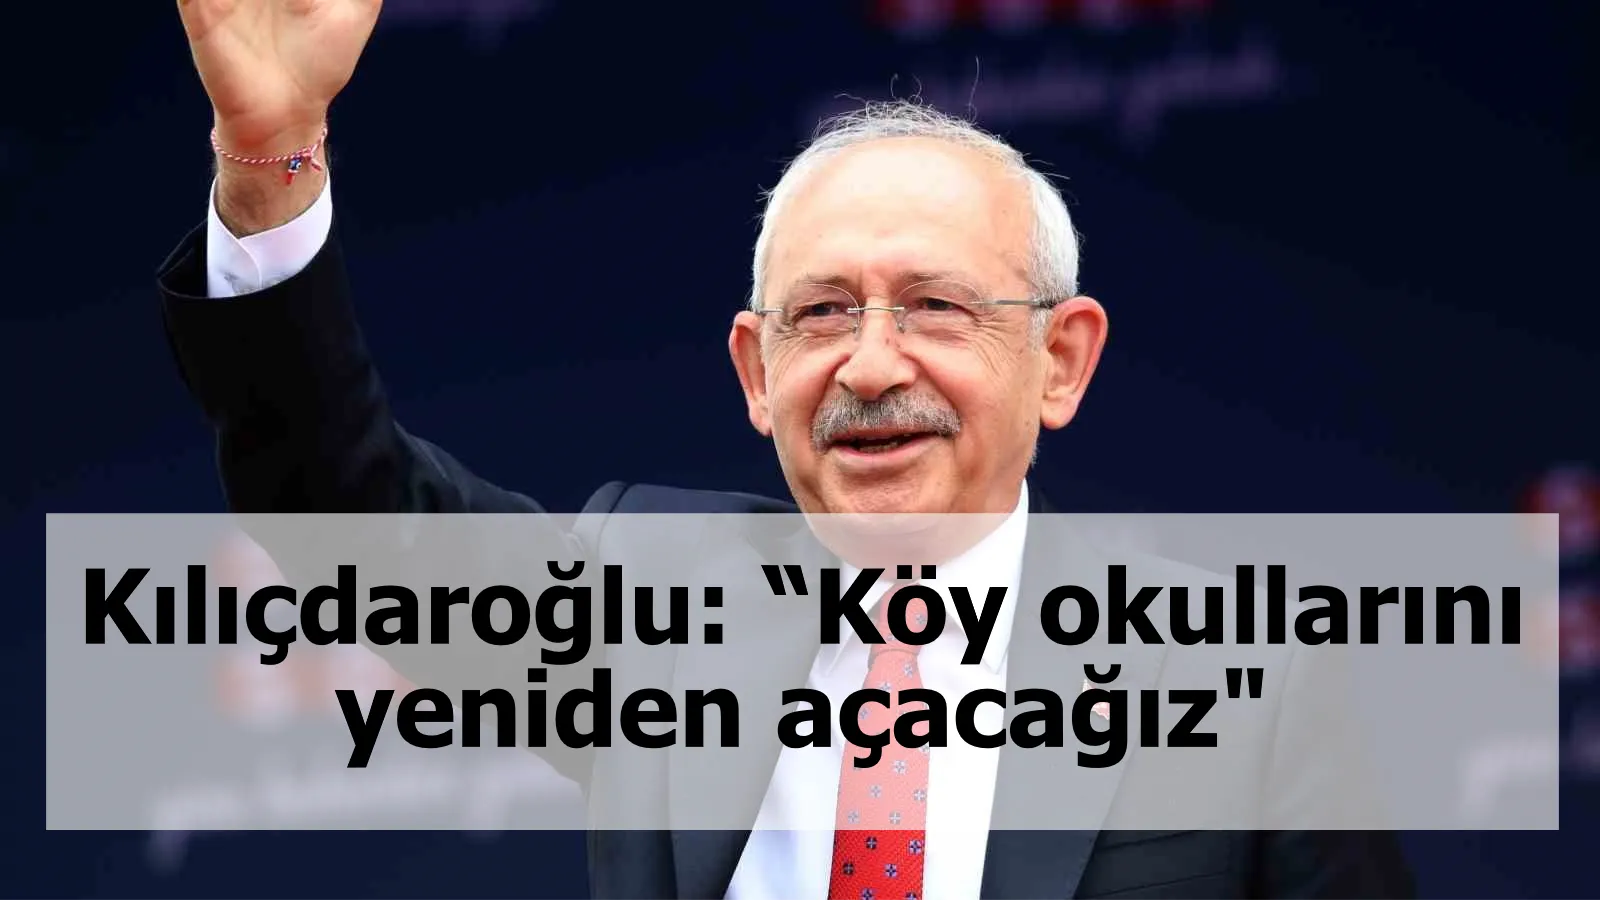 Kılıçdaroğlu: “Köy okullarını yeniden açacağız"